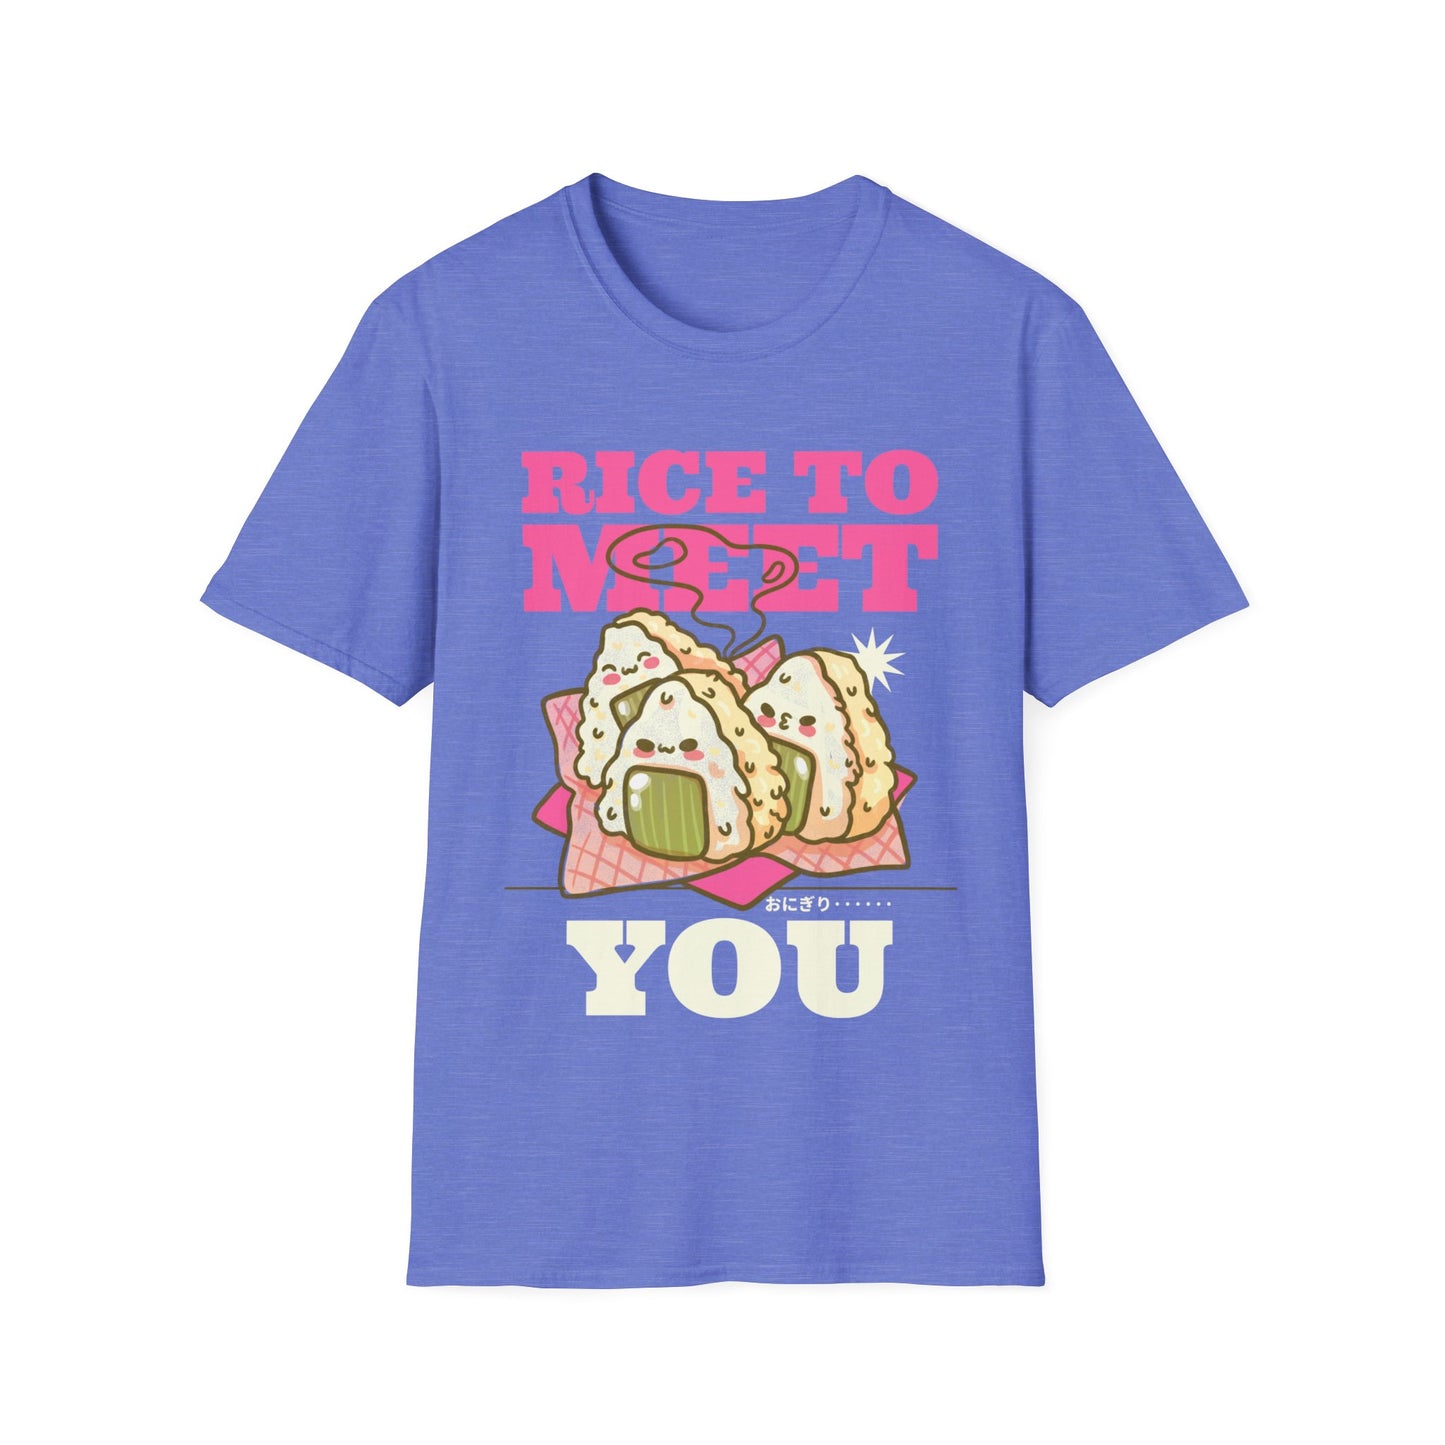 Rice to Meet You T-Shirt